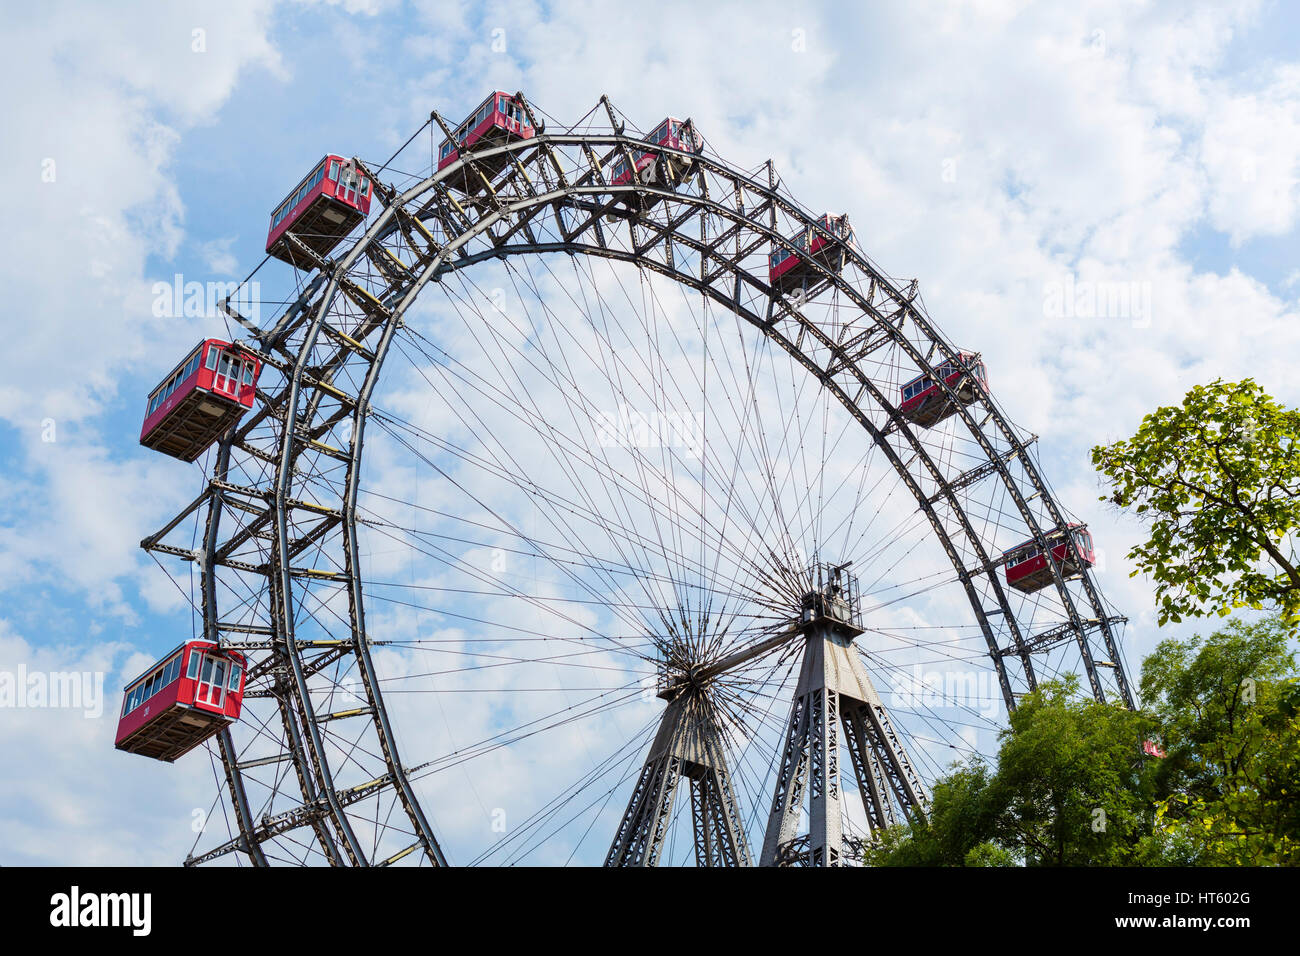 Vienna, Prater. The Wiener Riesenrad (Ferris Wheel) in the Prater amusement park, Vienna, Austria. Stock Photo